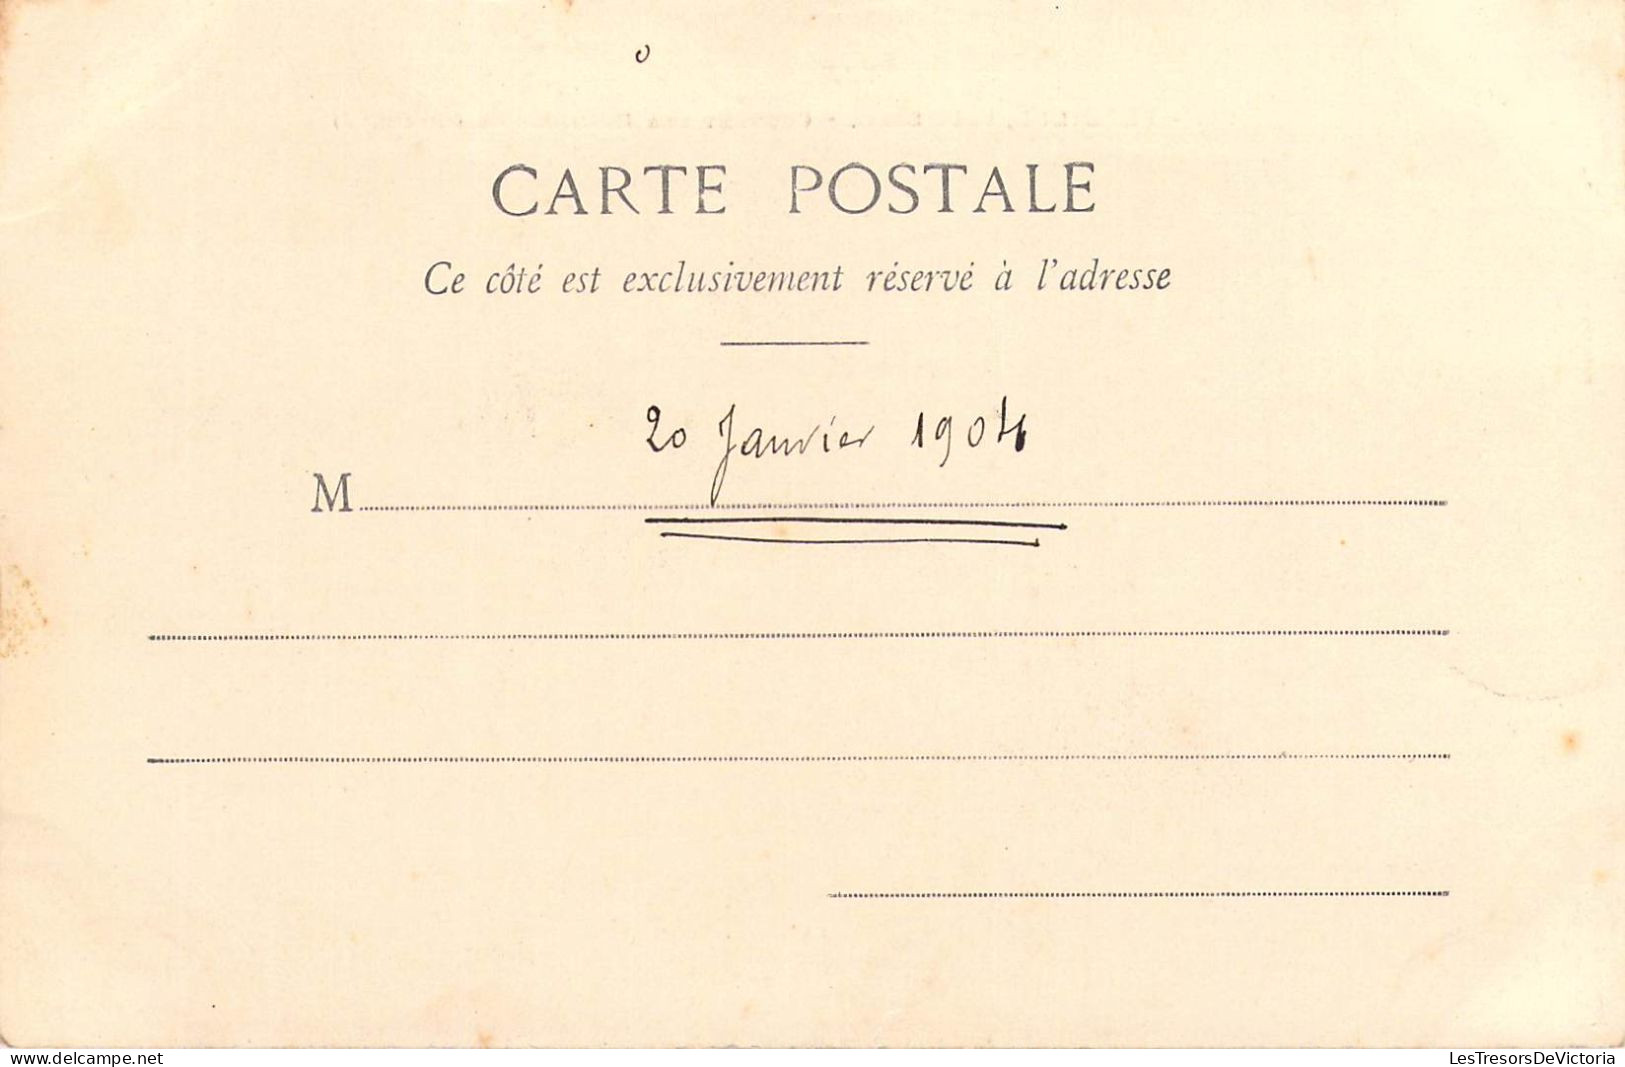 FRANCE - 11 - PROUILLE - Couvent Des Dominicains - 20 Janvier 1904 - Carte Postale Ancienne - Bram